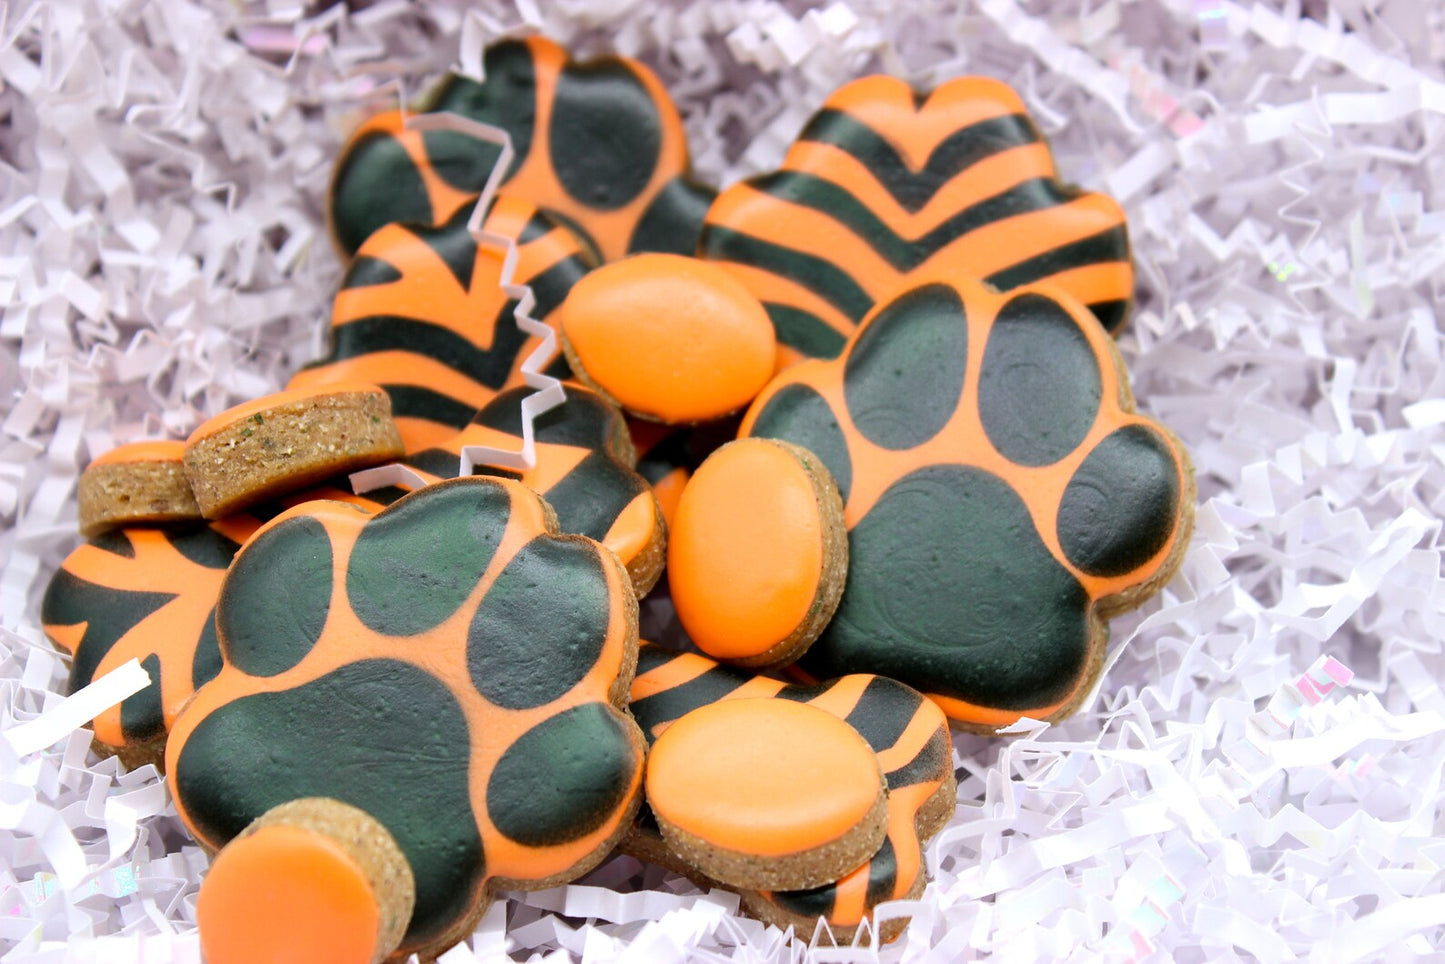 Go get 'Em Tiger” Canine Cookie Gift Set